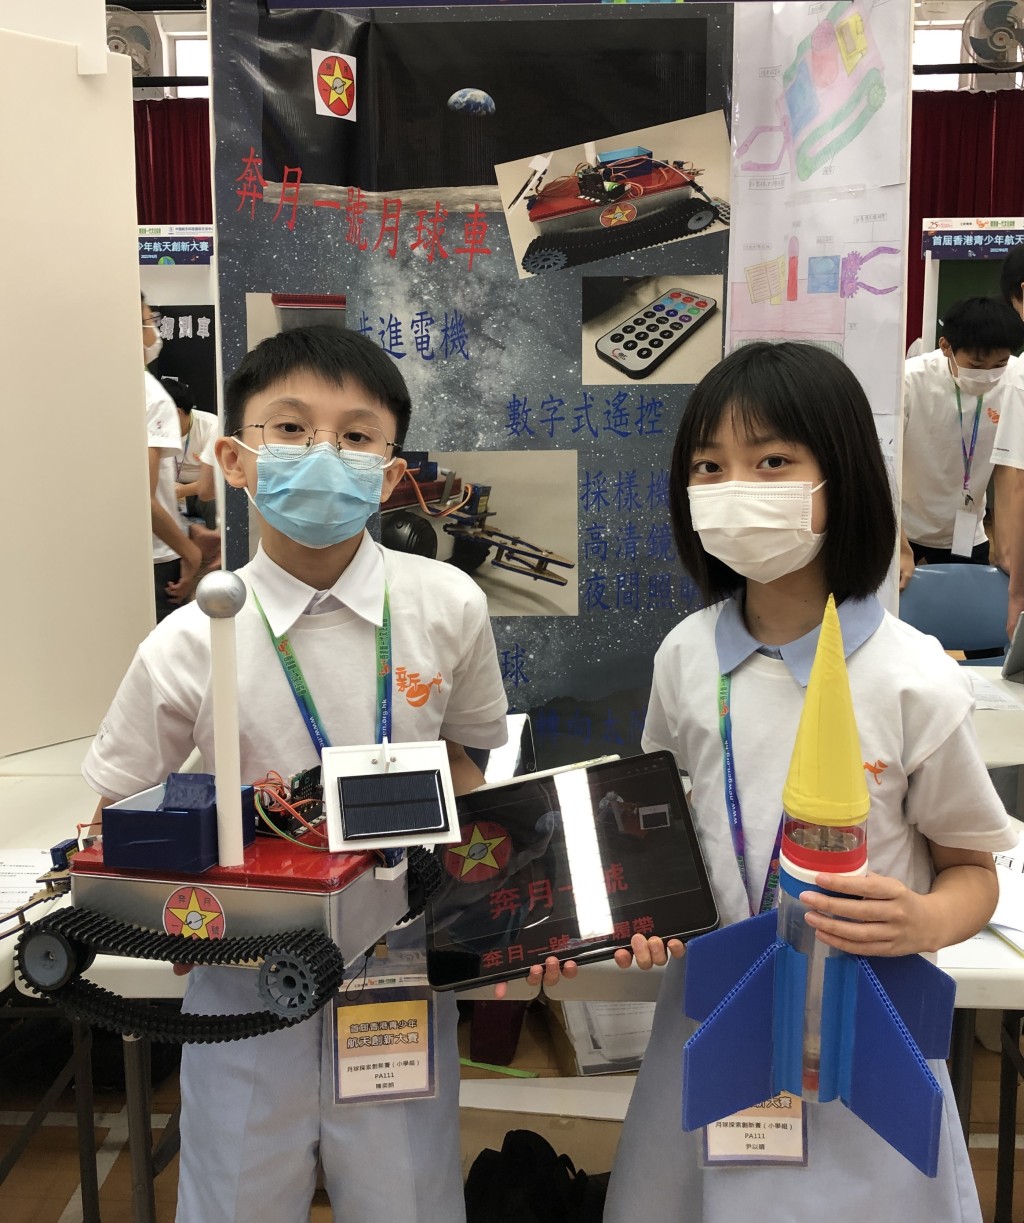 中華基督教會基灣小學（愛蝶灣）於「月球探索創新賽」小學組獲得一等獎。